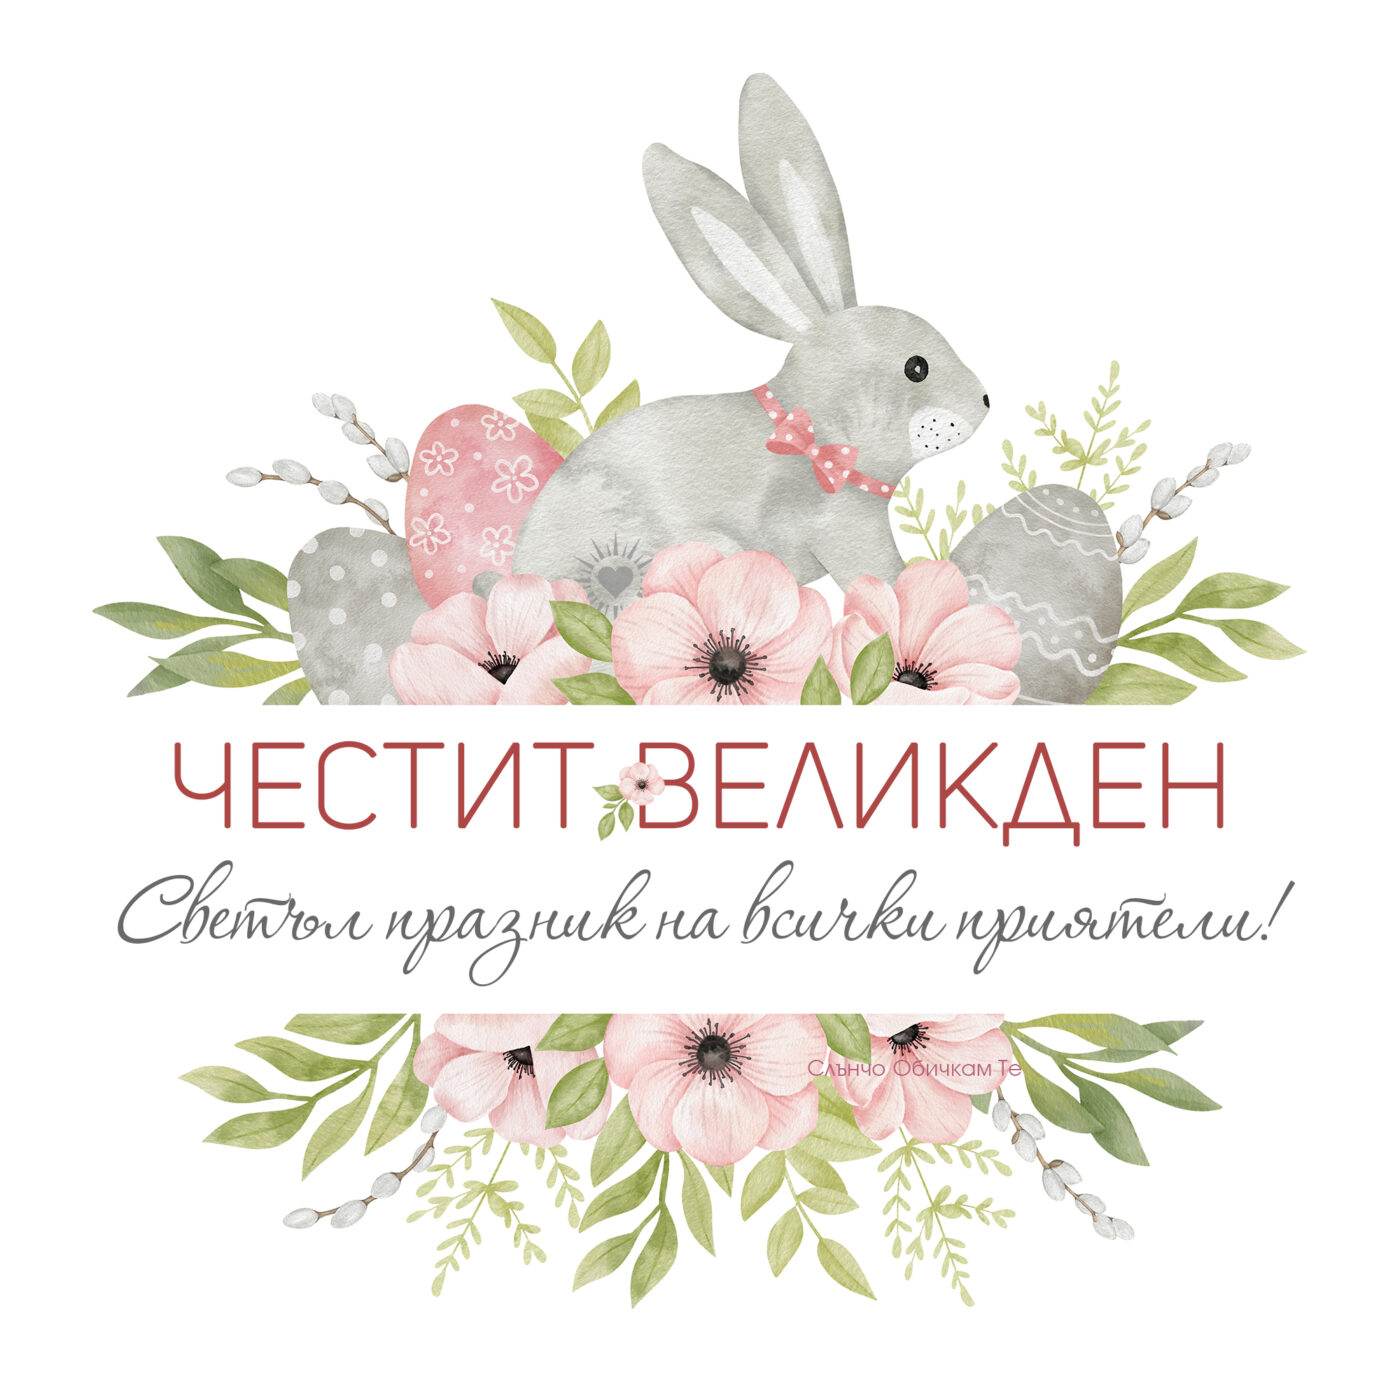 Честит Великден, зайче, великденски яйца, великденски картички и пожелания, честит великден